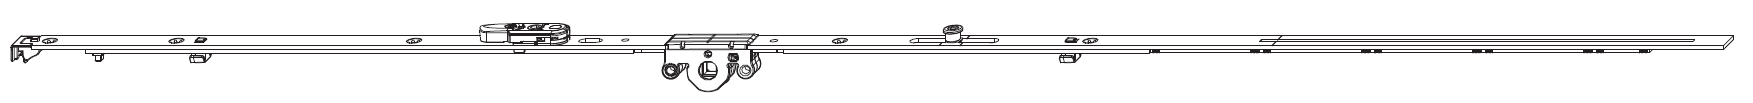 MAICO -  Cremonese MULTI-MATIC anta ribalta antieffrazione altezza maniglia fissa con piedino e dss per ribalta - gr / dim. 660 - entrata 15 - alt. man. 190 - lbb/hbb 431 - 660